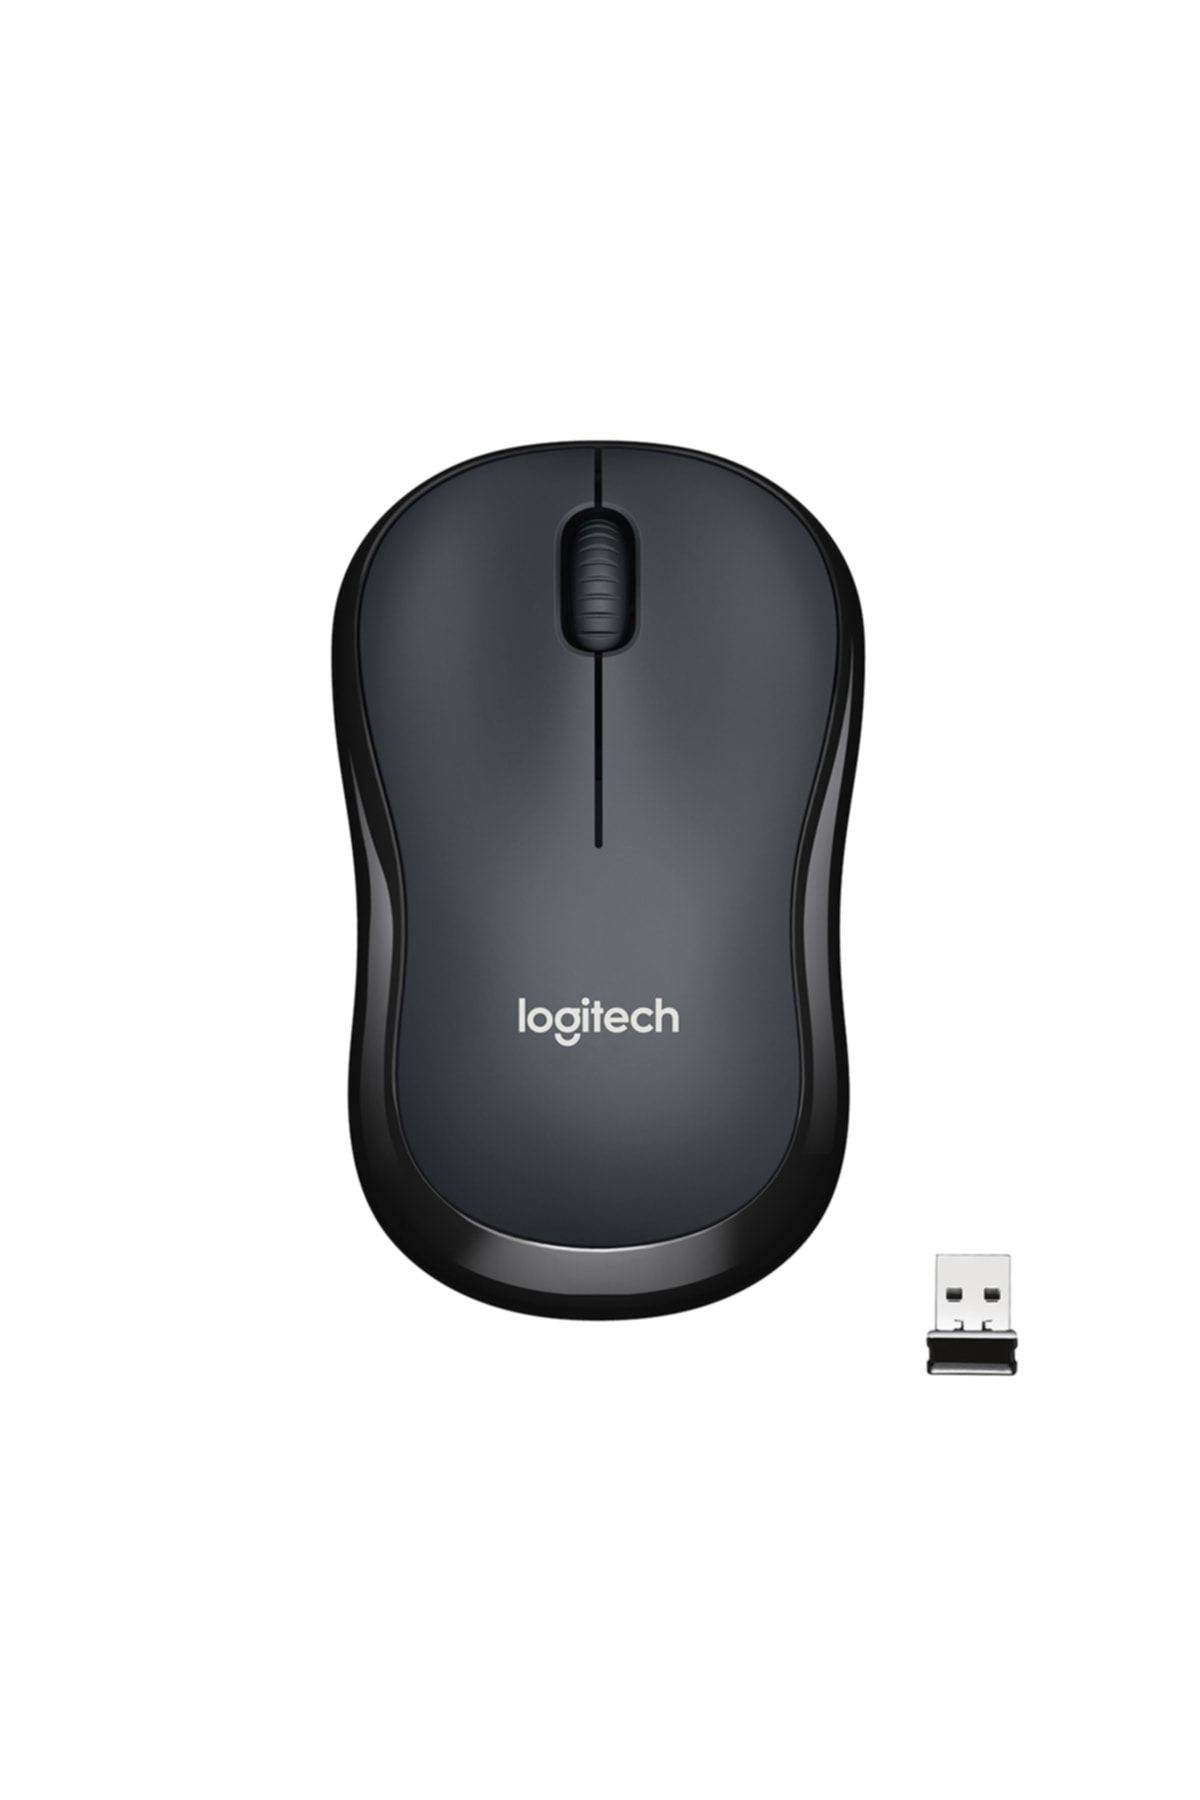 logitech B220 Sessiz Kompakt Kablosuz Mouse - Siyah